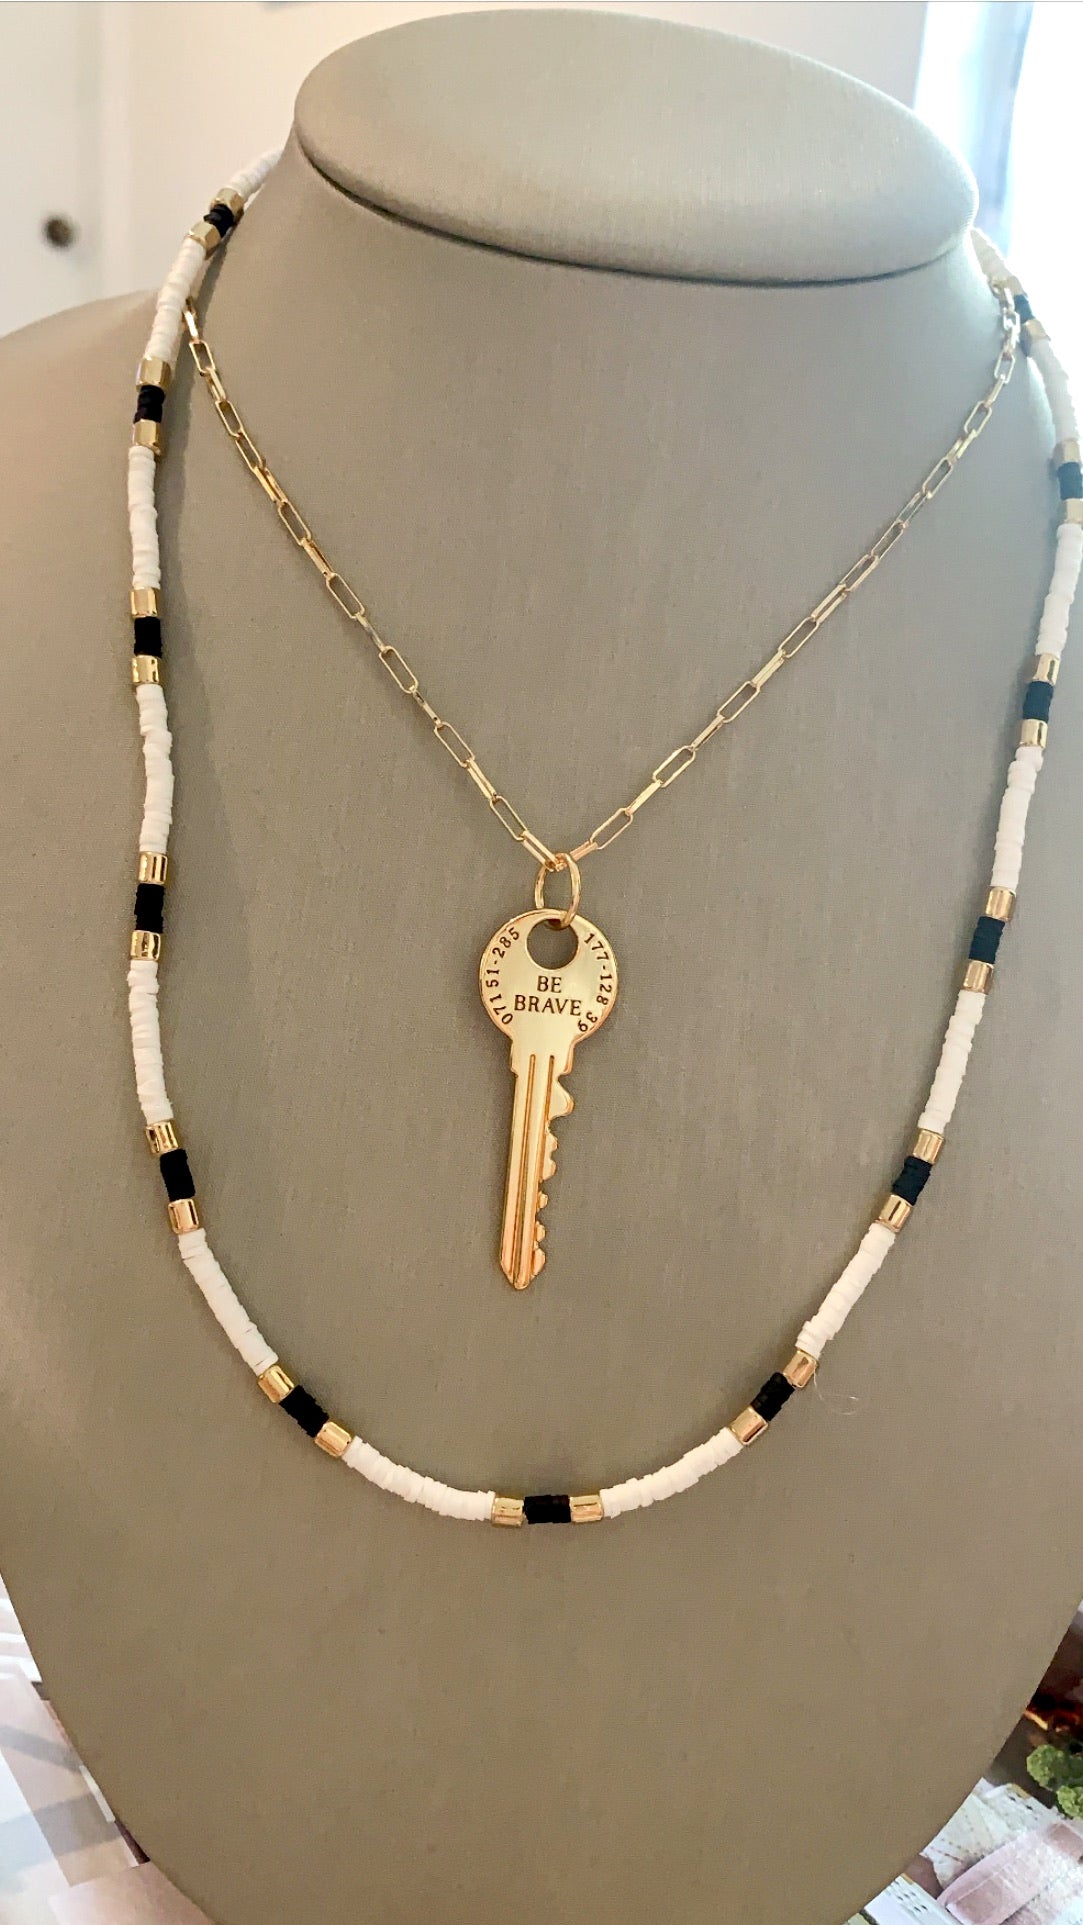 Be brave key necklace